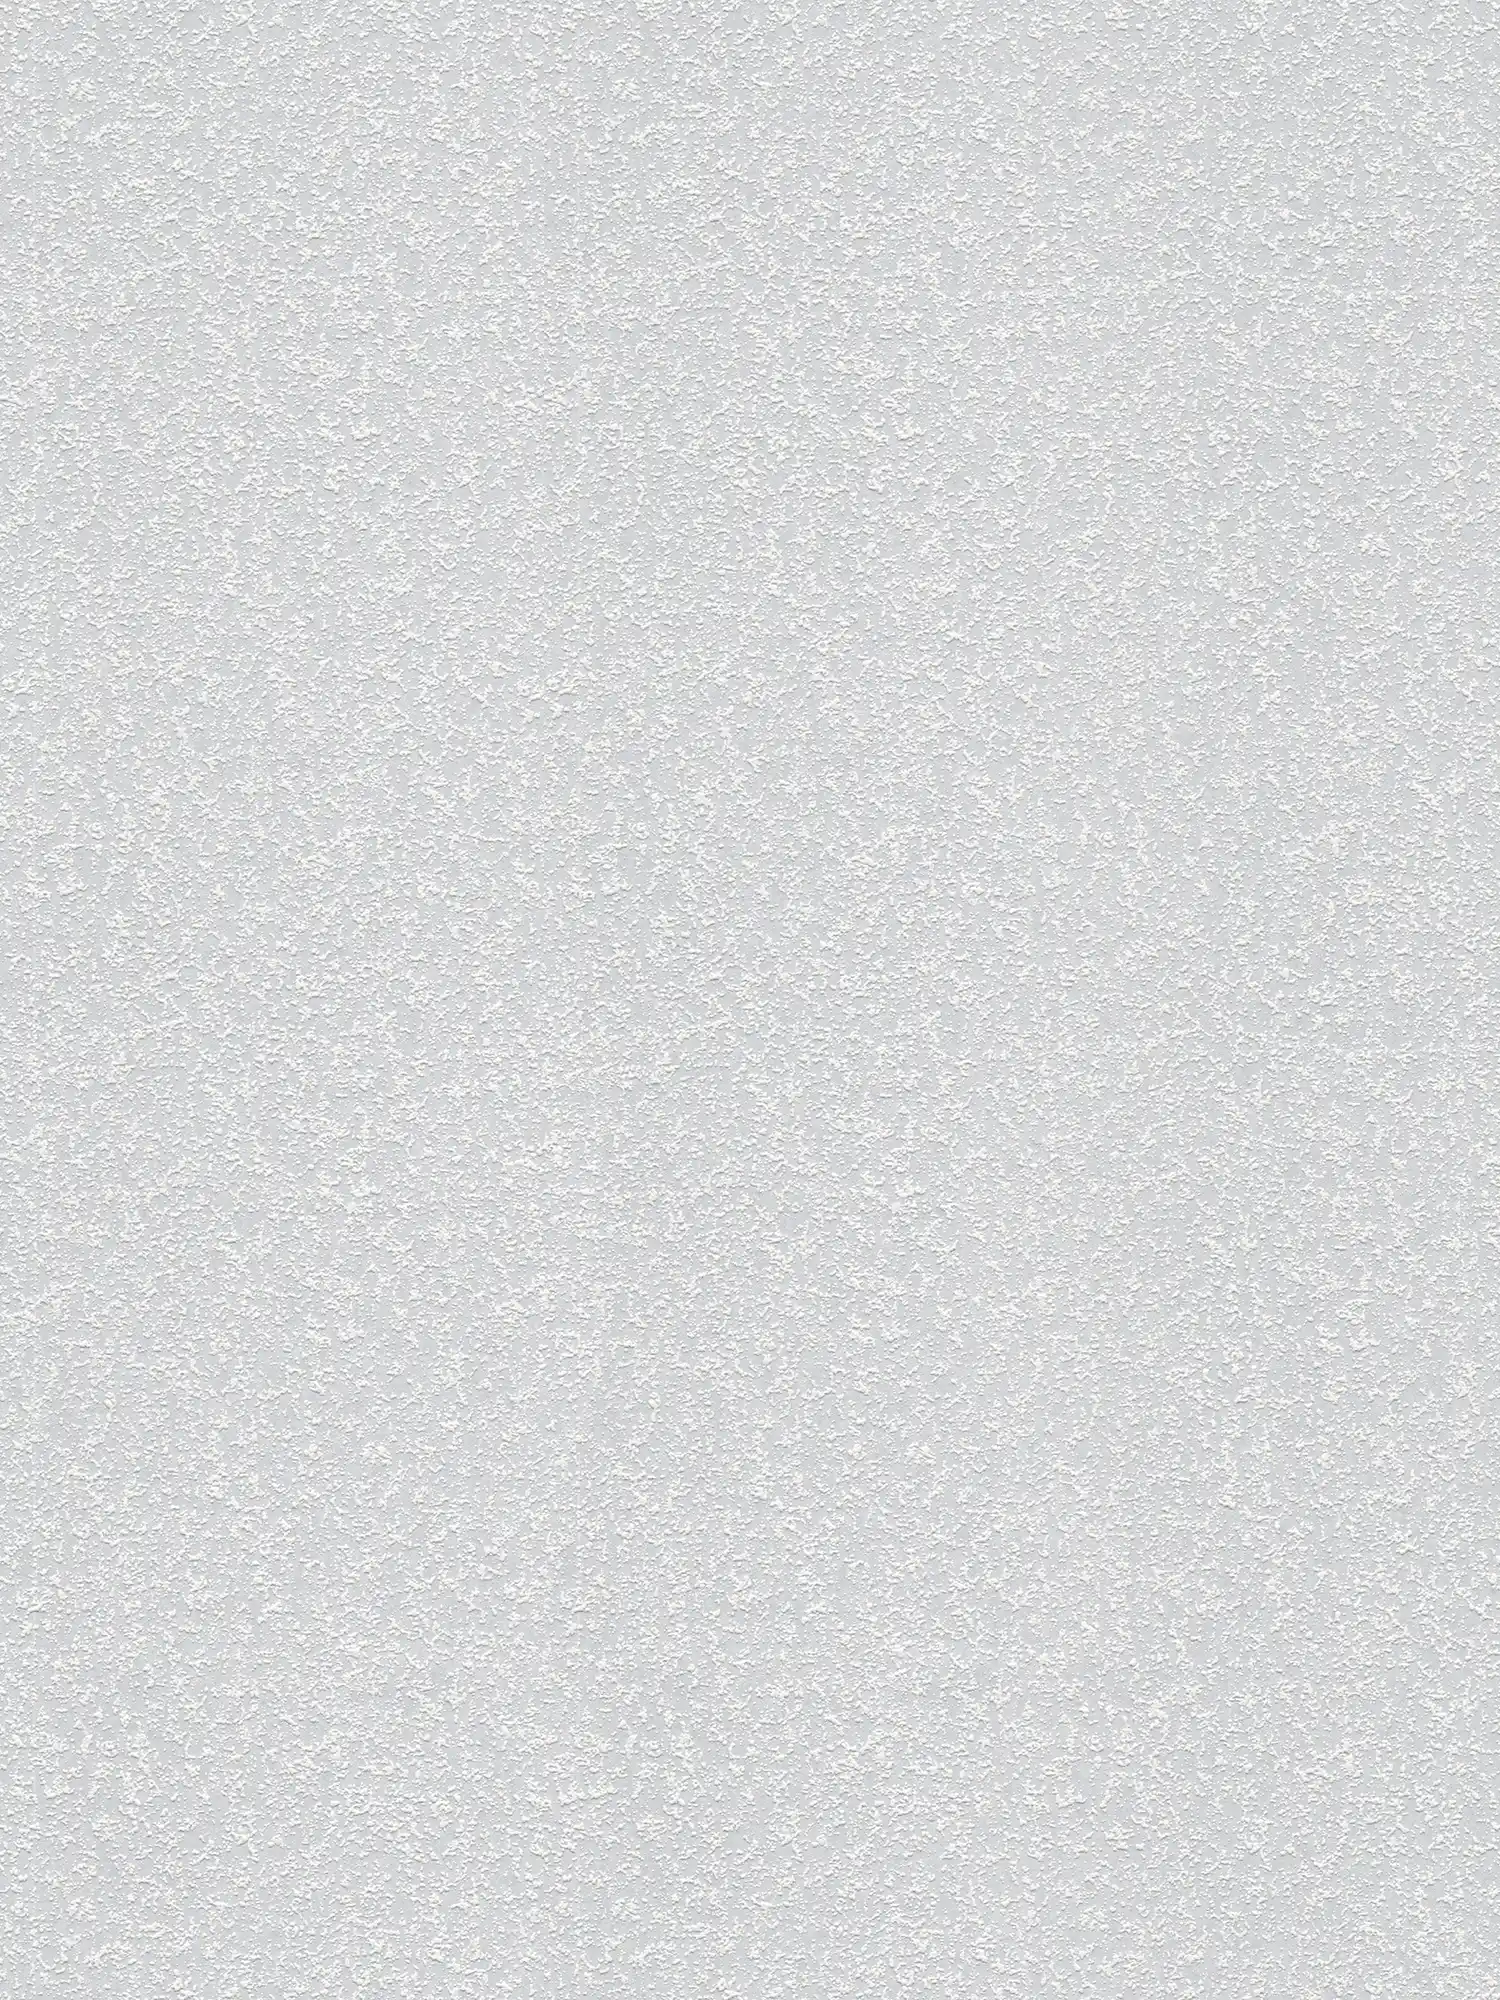 Papel pintado texturizado con estructura de arena granulada - pintable, blanco
